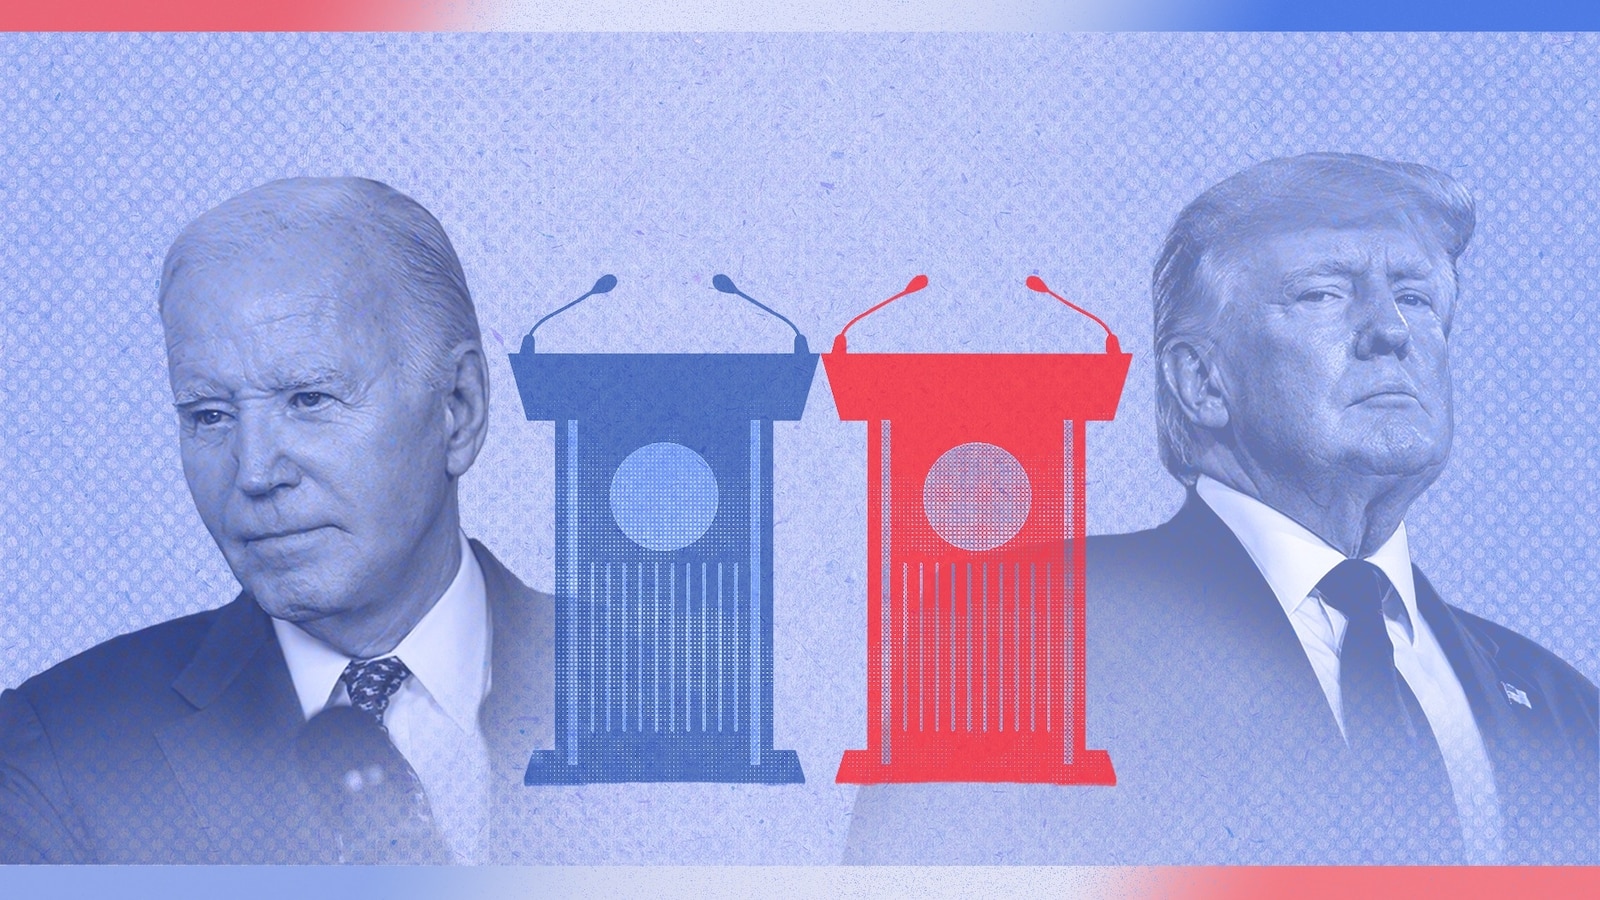 Analysis of the winner of the first BidenTrump presidential debate